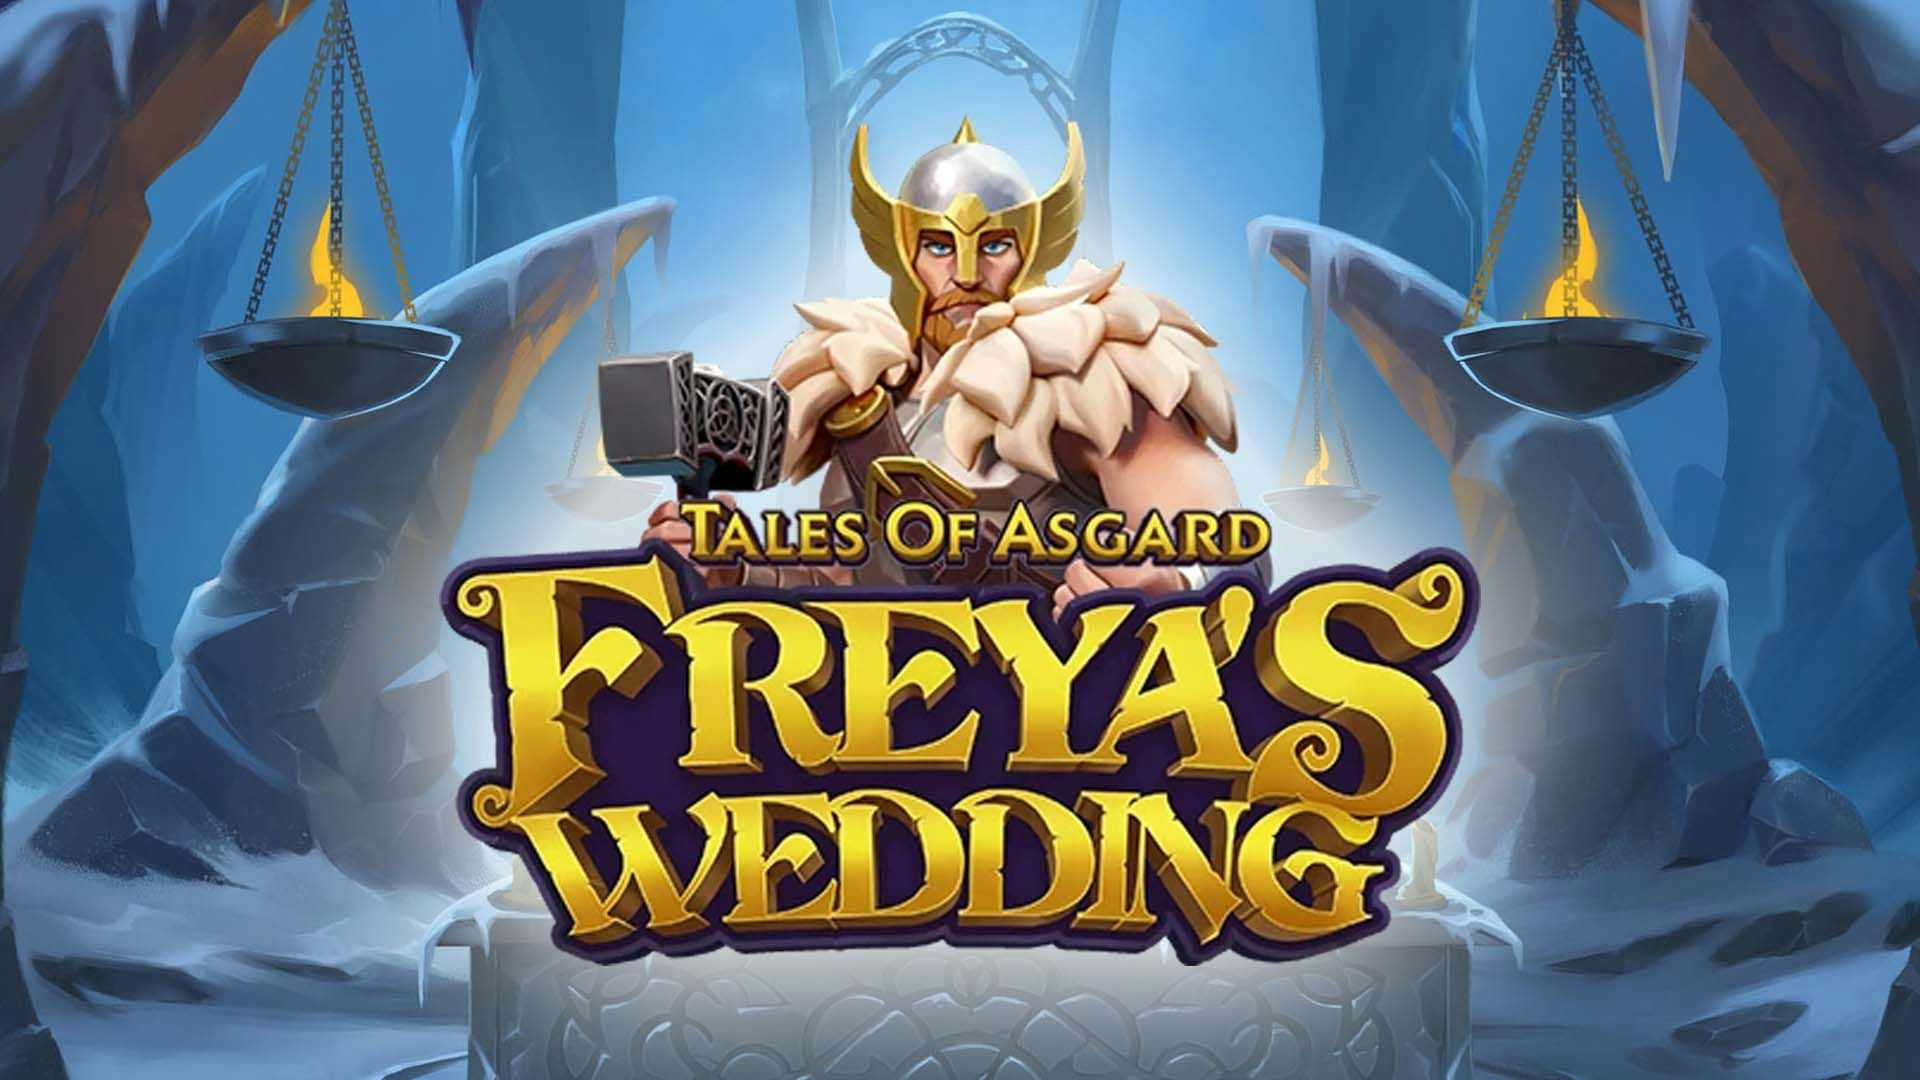 Tales of Asgard Freya's Wedding